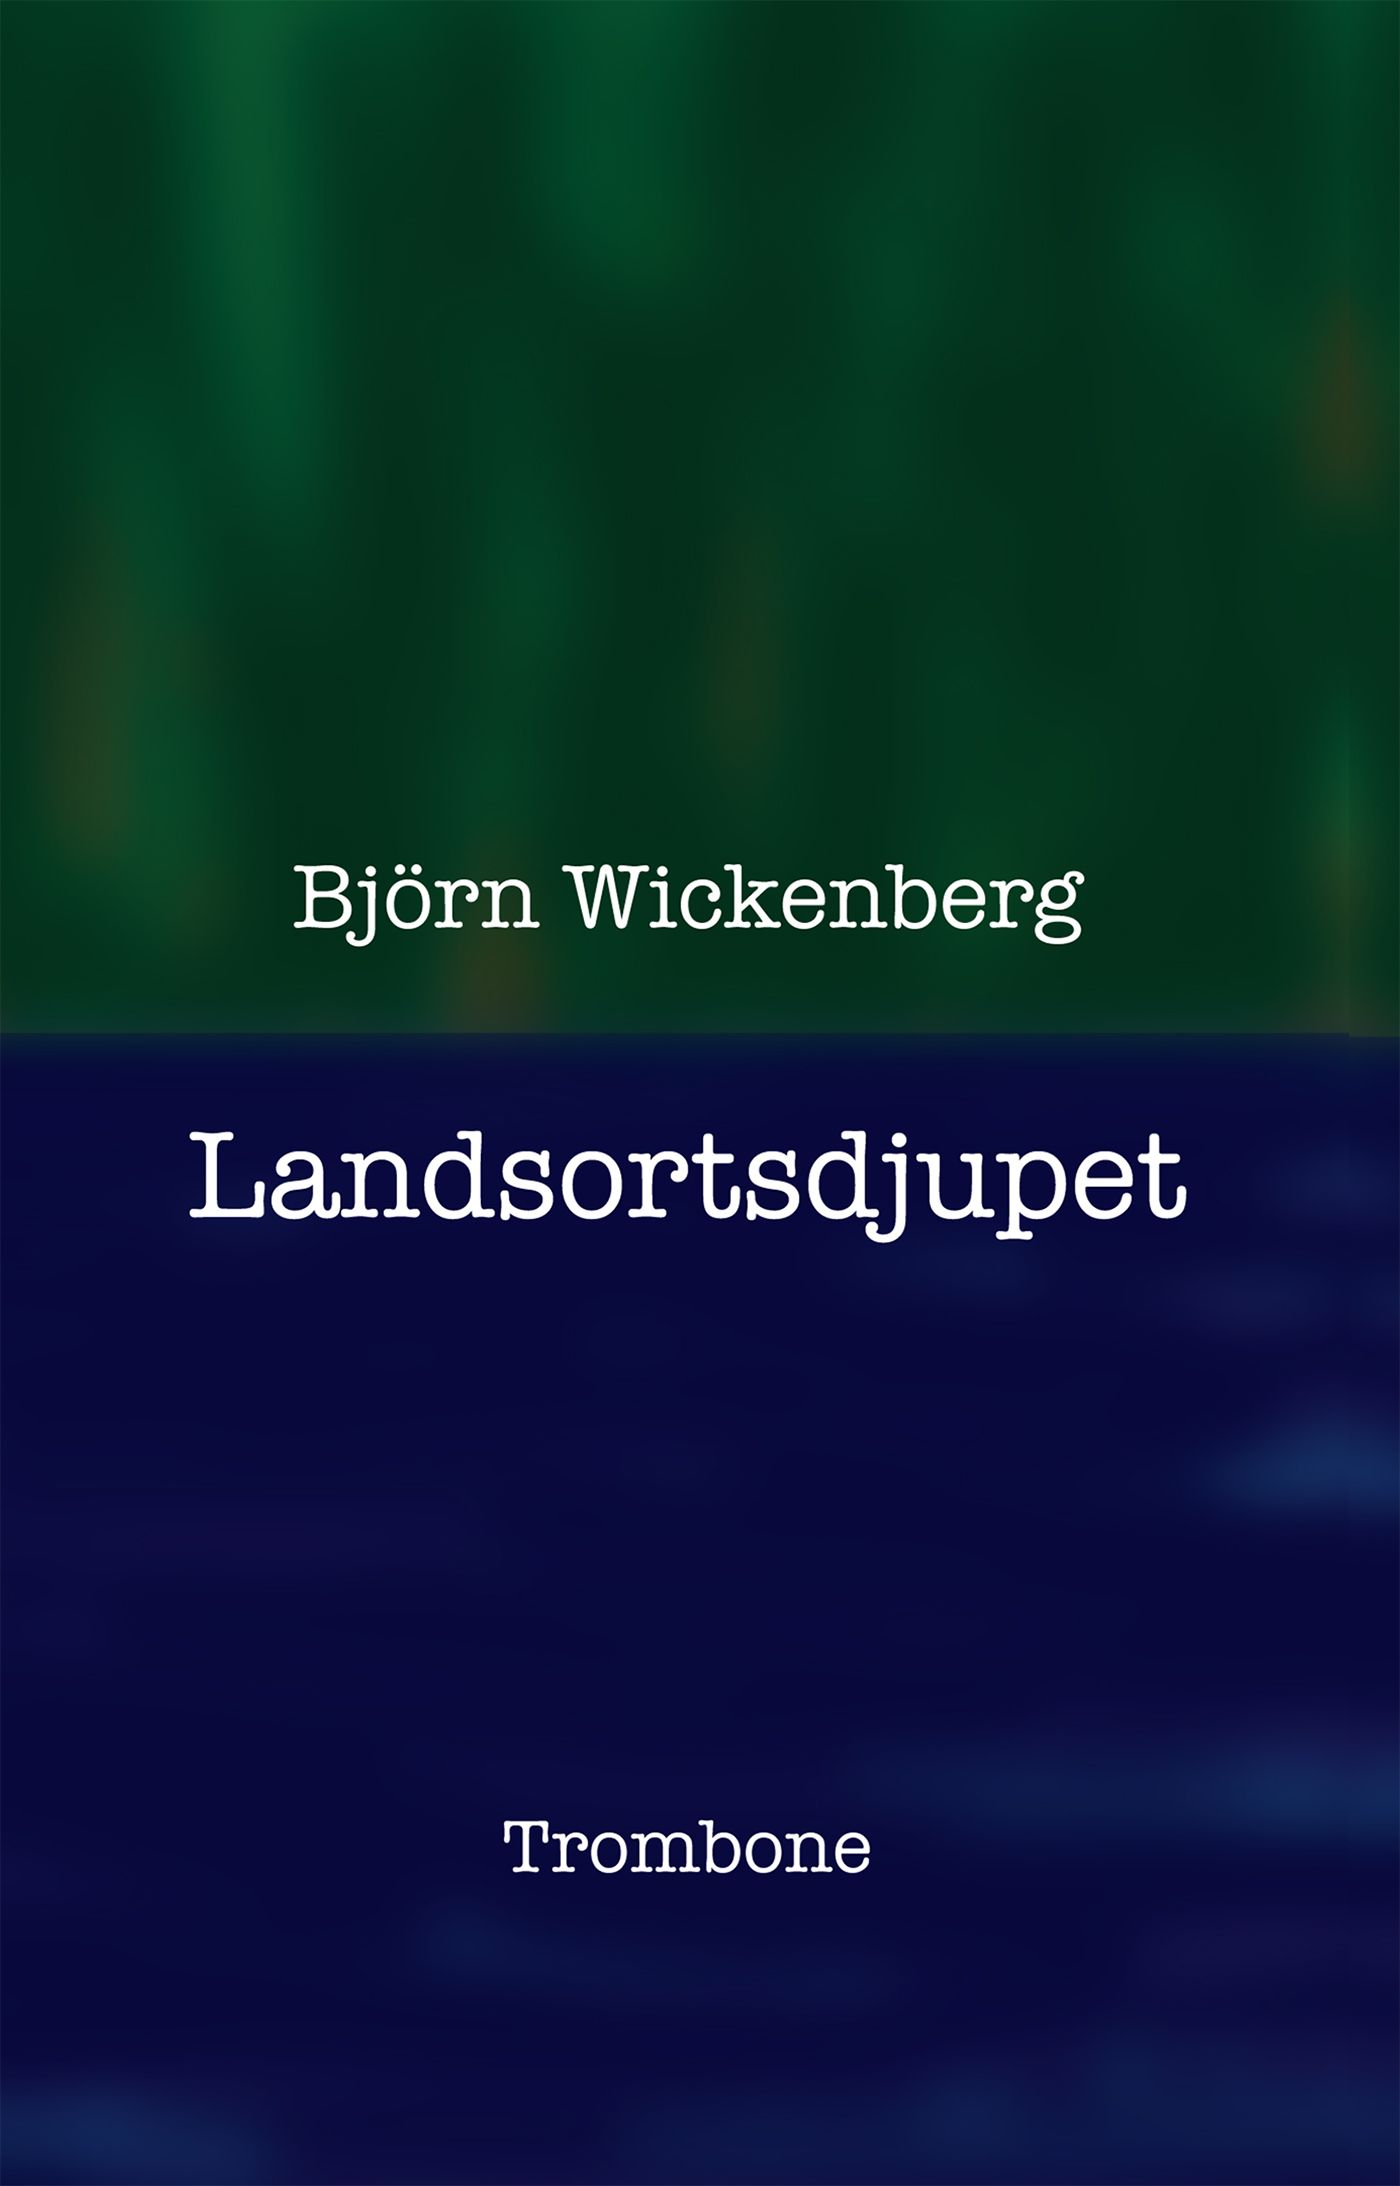 Landsortsdjupet, e-bog af Björn Wickenberg